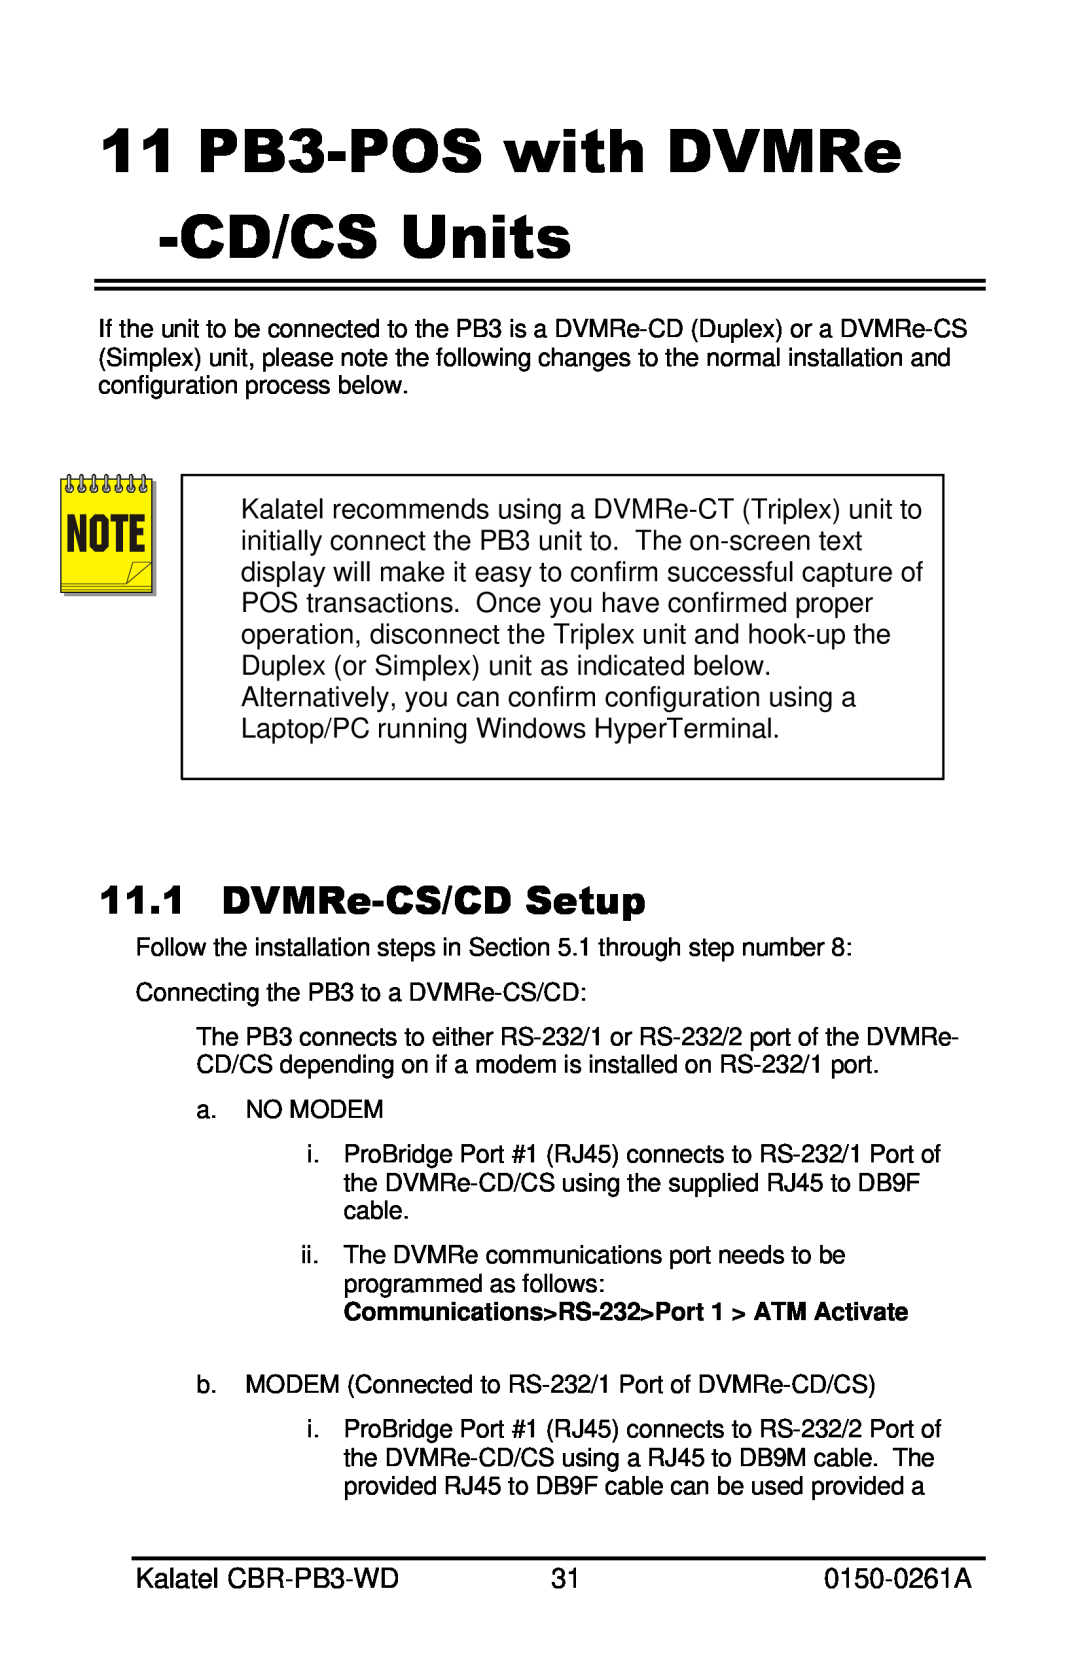 GE CBR-PB3-WD installation manual 11 PB3-POS with DVMRe -CD/CS Units, DVMRe-CS/CD Setup 